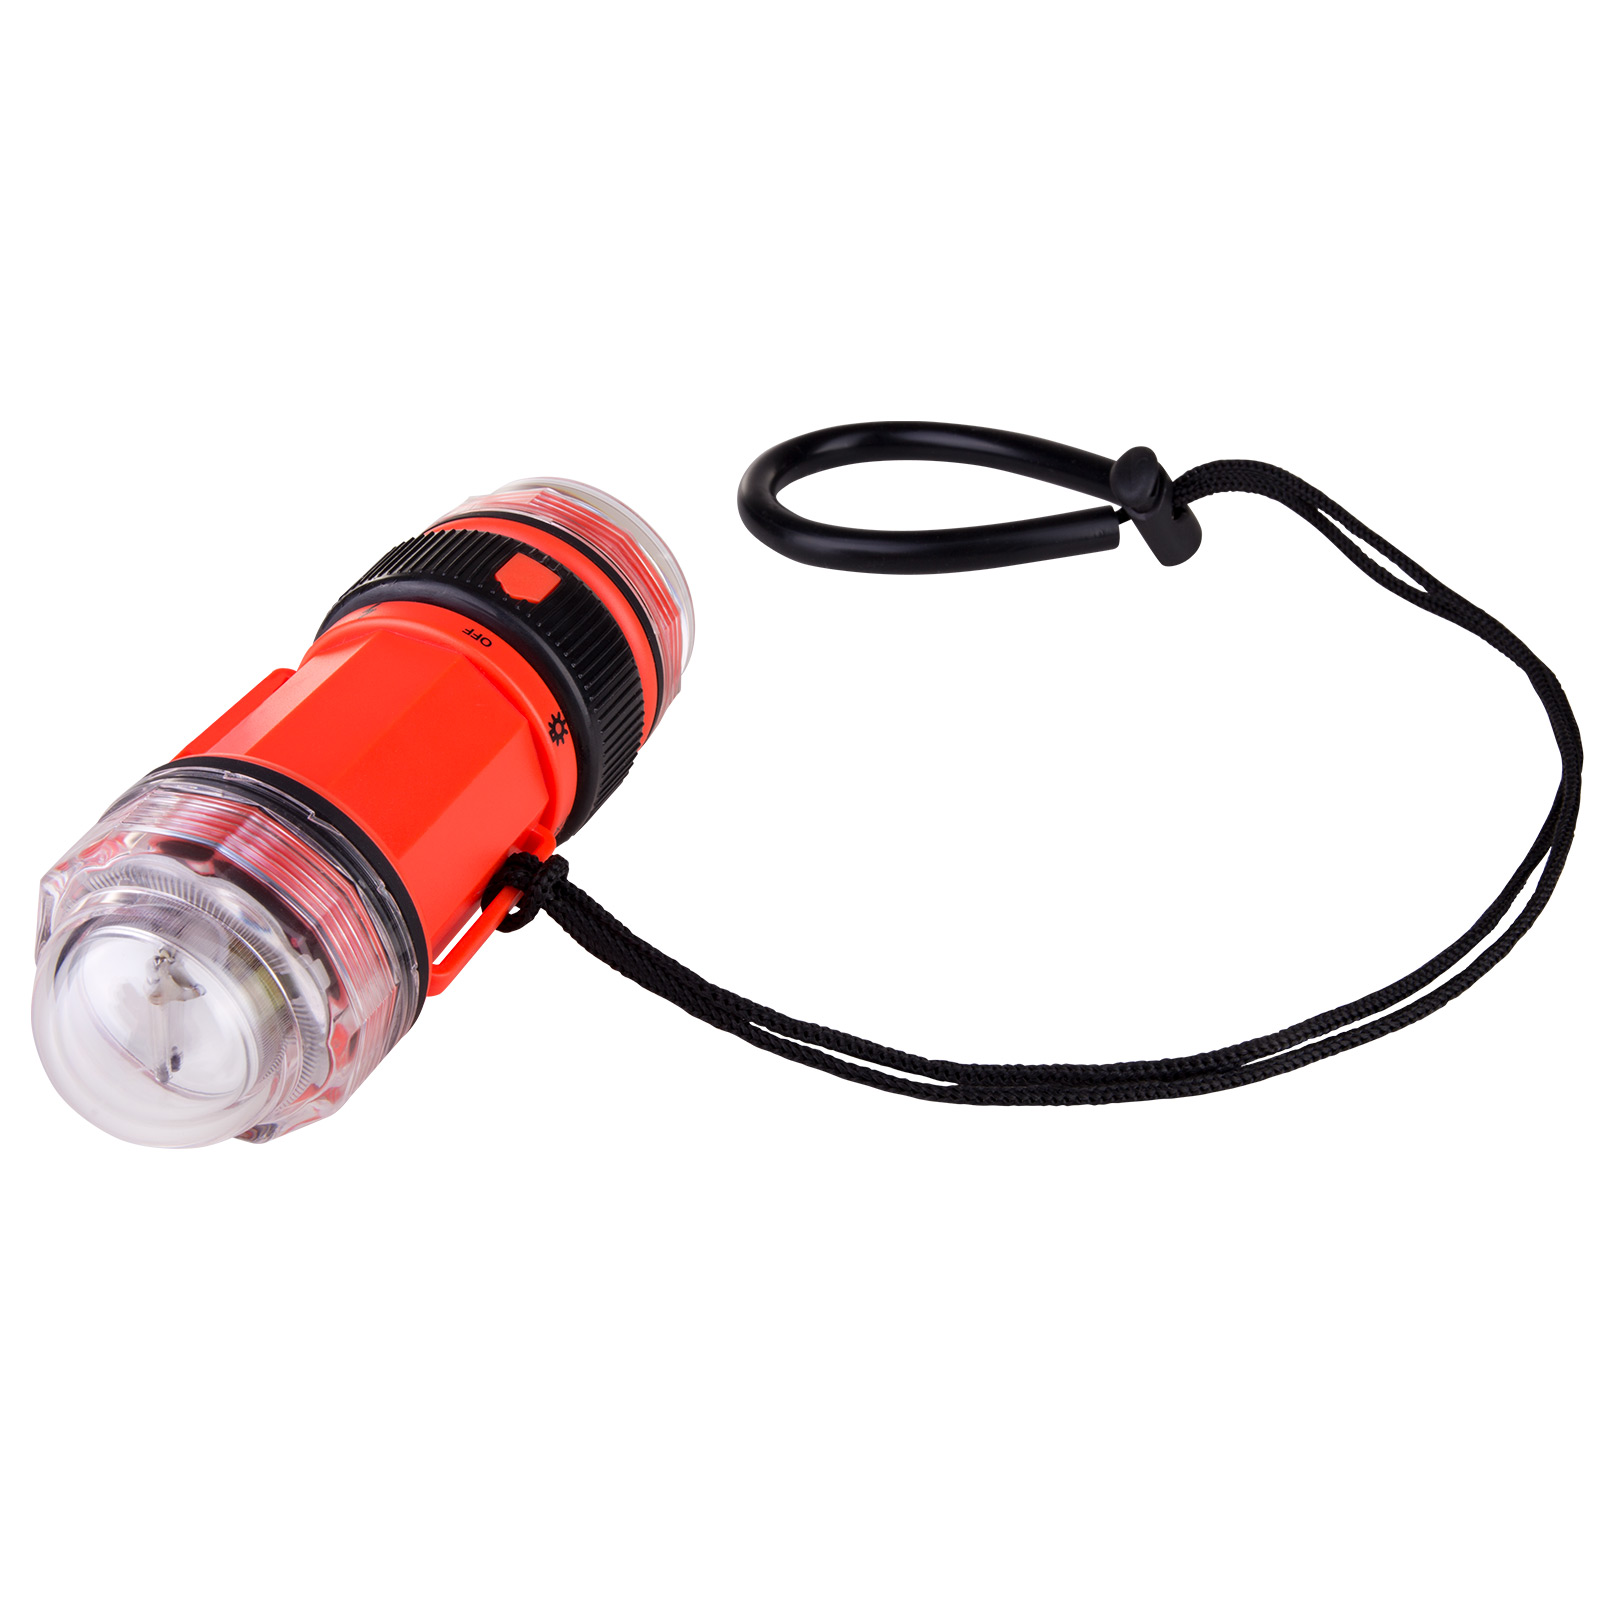 IST Strobe Torch Blitz & Lampe LED Strobe & Light Signalblinker 